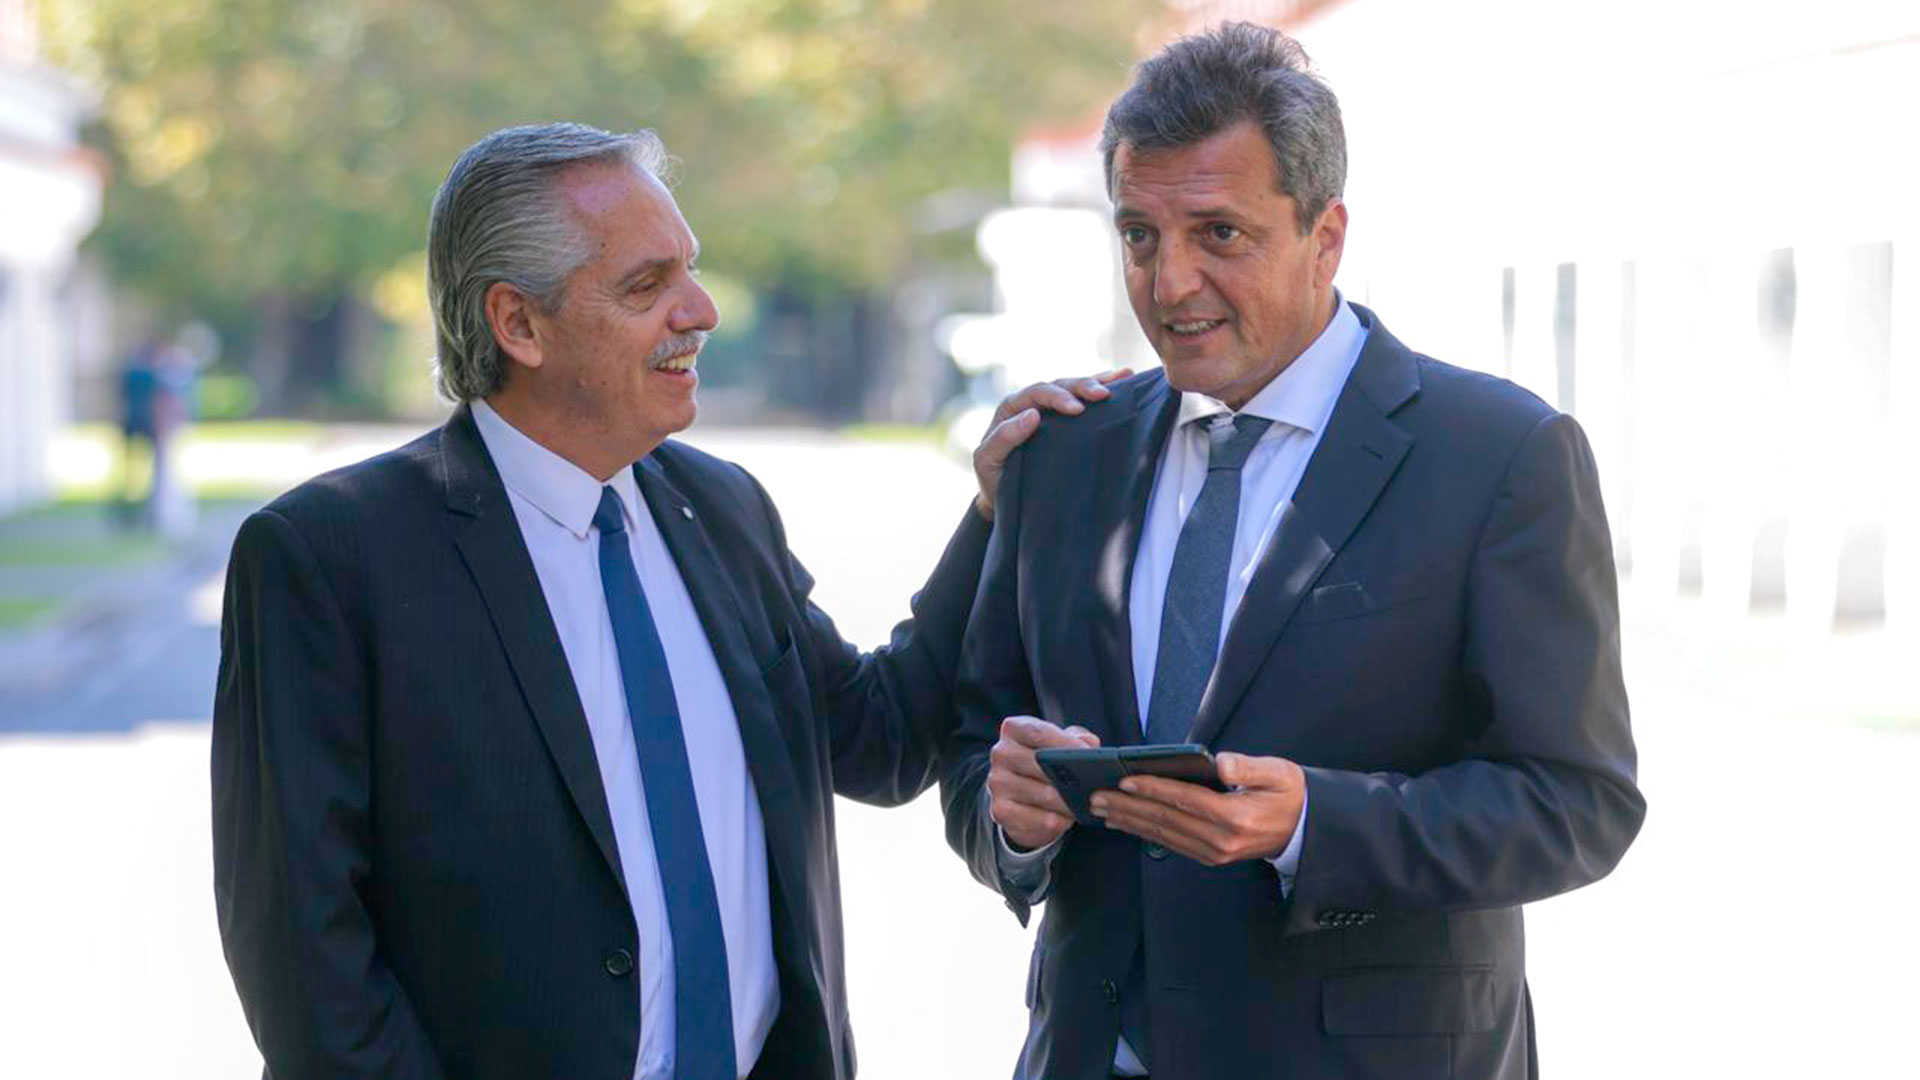 Al hombro. La foto que difundió Presidencia del encuentro entre Alberto Fernández y Sergio Massa.